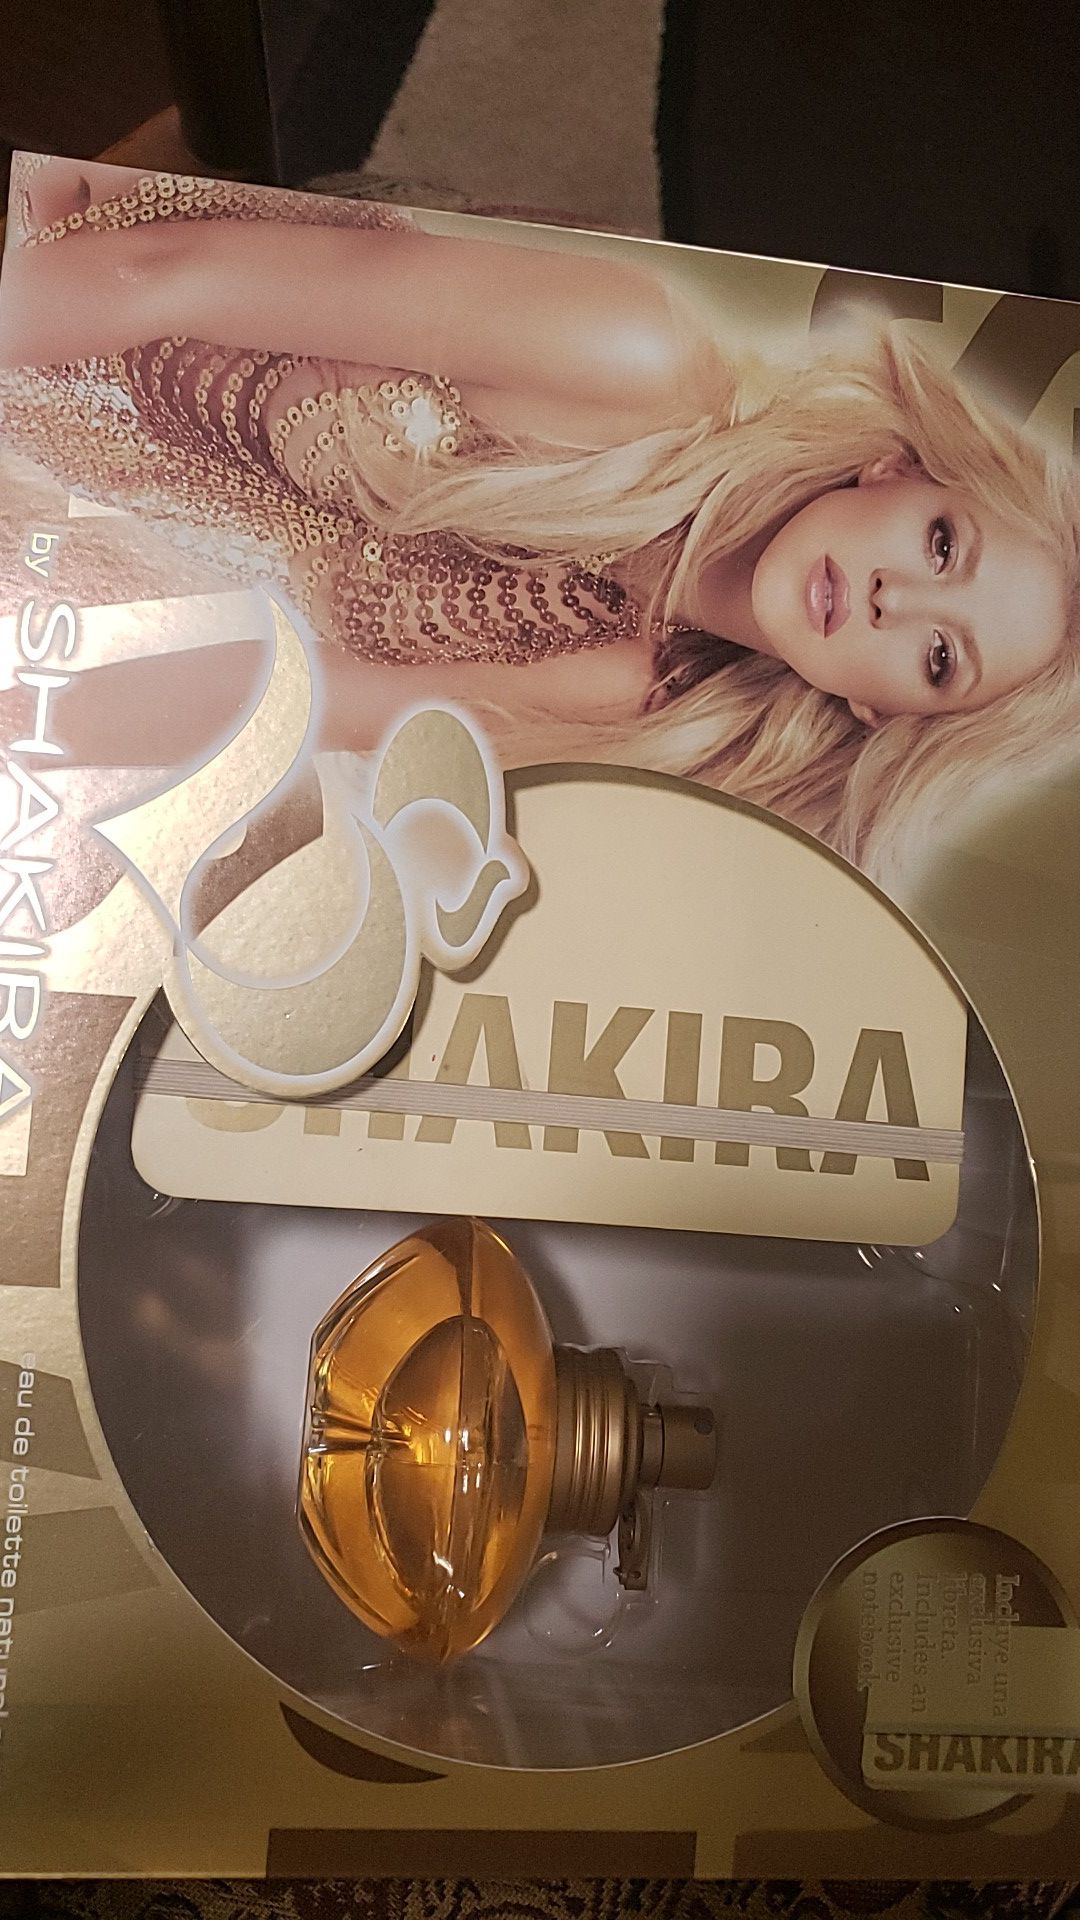 Shakira perfume